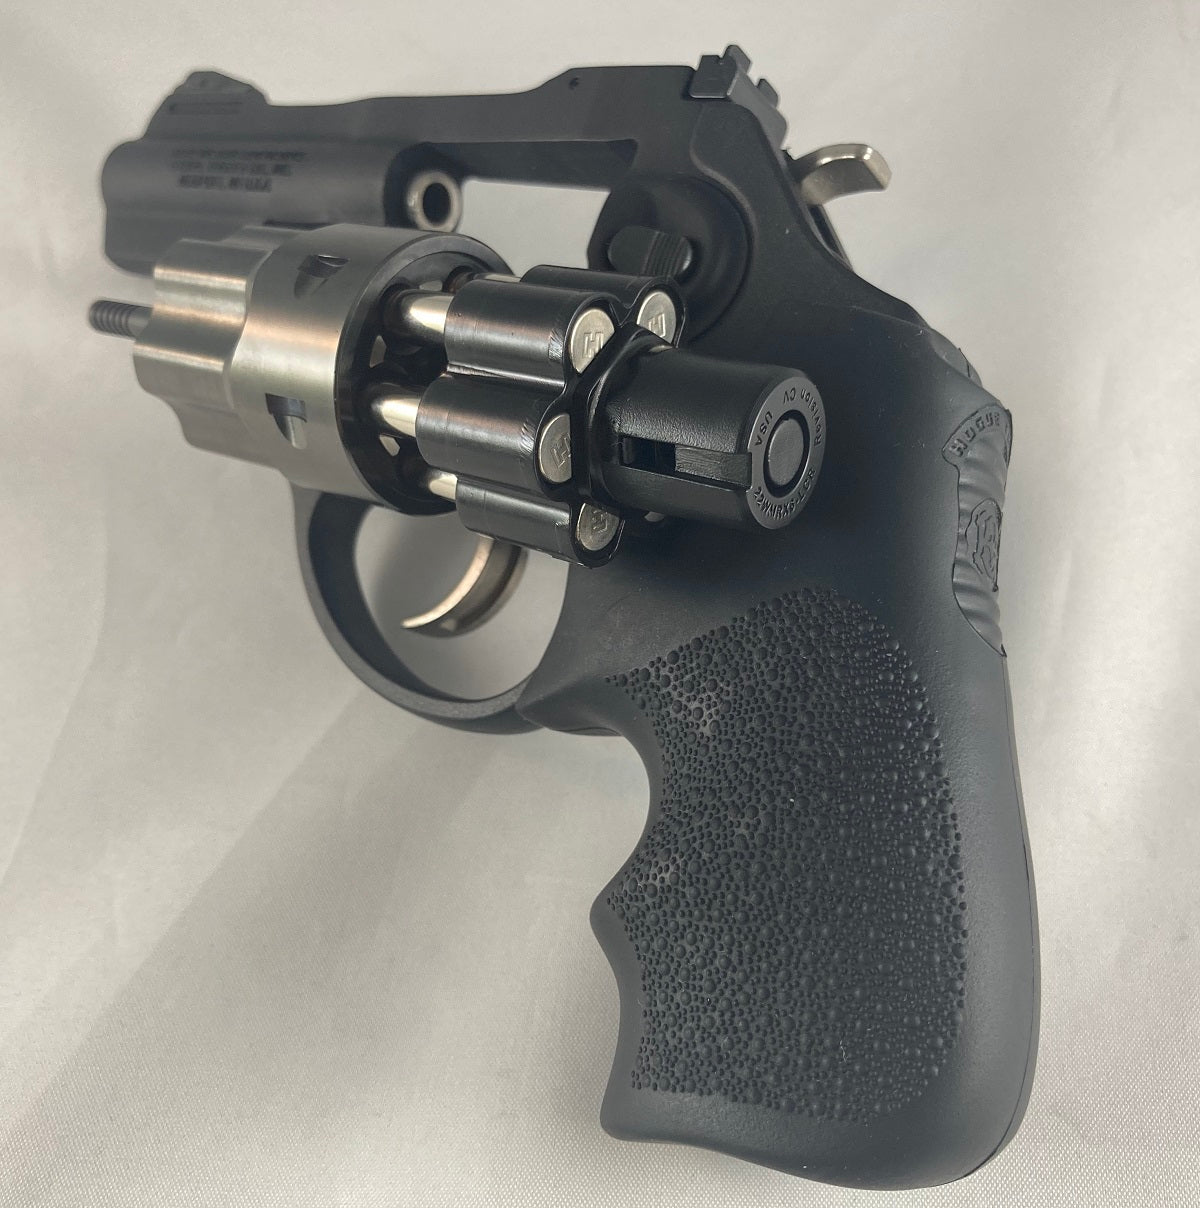 Caliber: 22WMR (Magnum), Loader for 6-Shot, Ruger LCR / LCRx revolvers